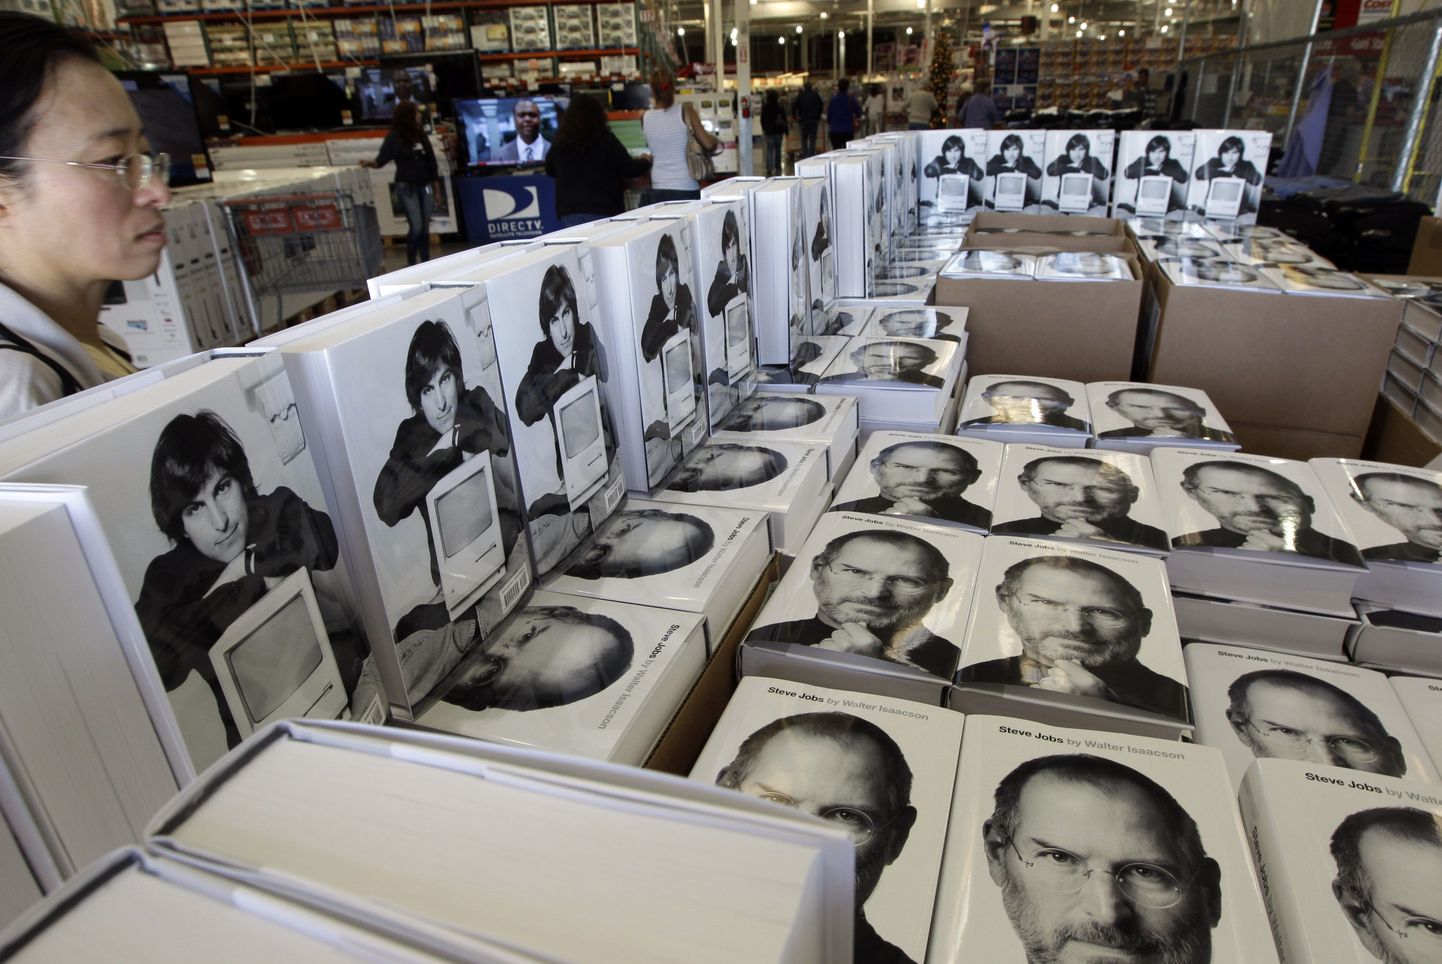 Walter Isaacsoni biograafia Steve Jobs raamatupoes.